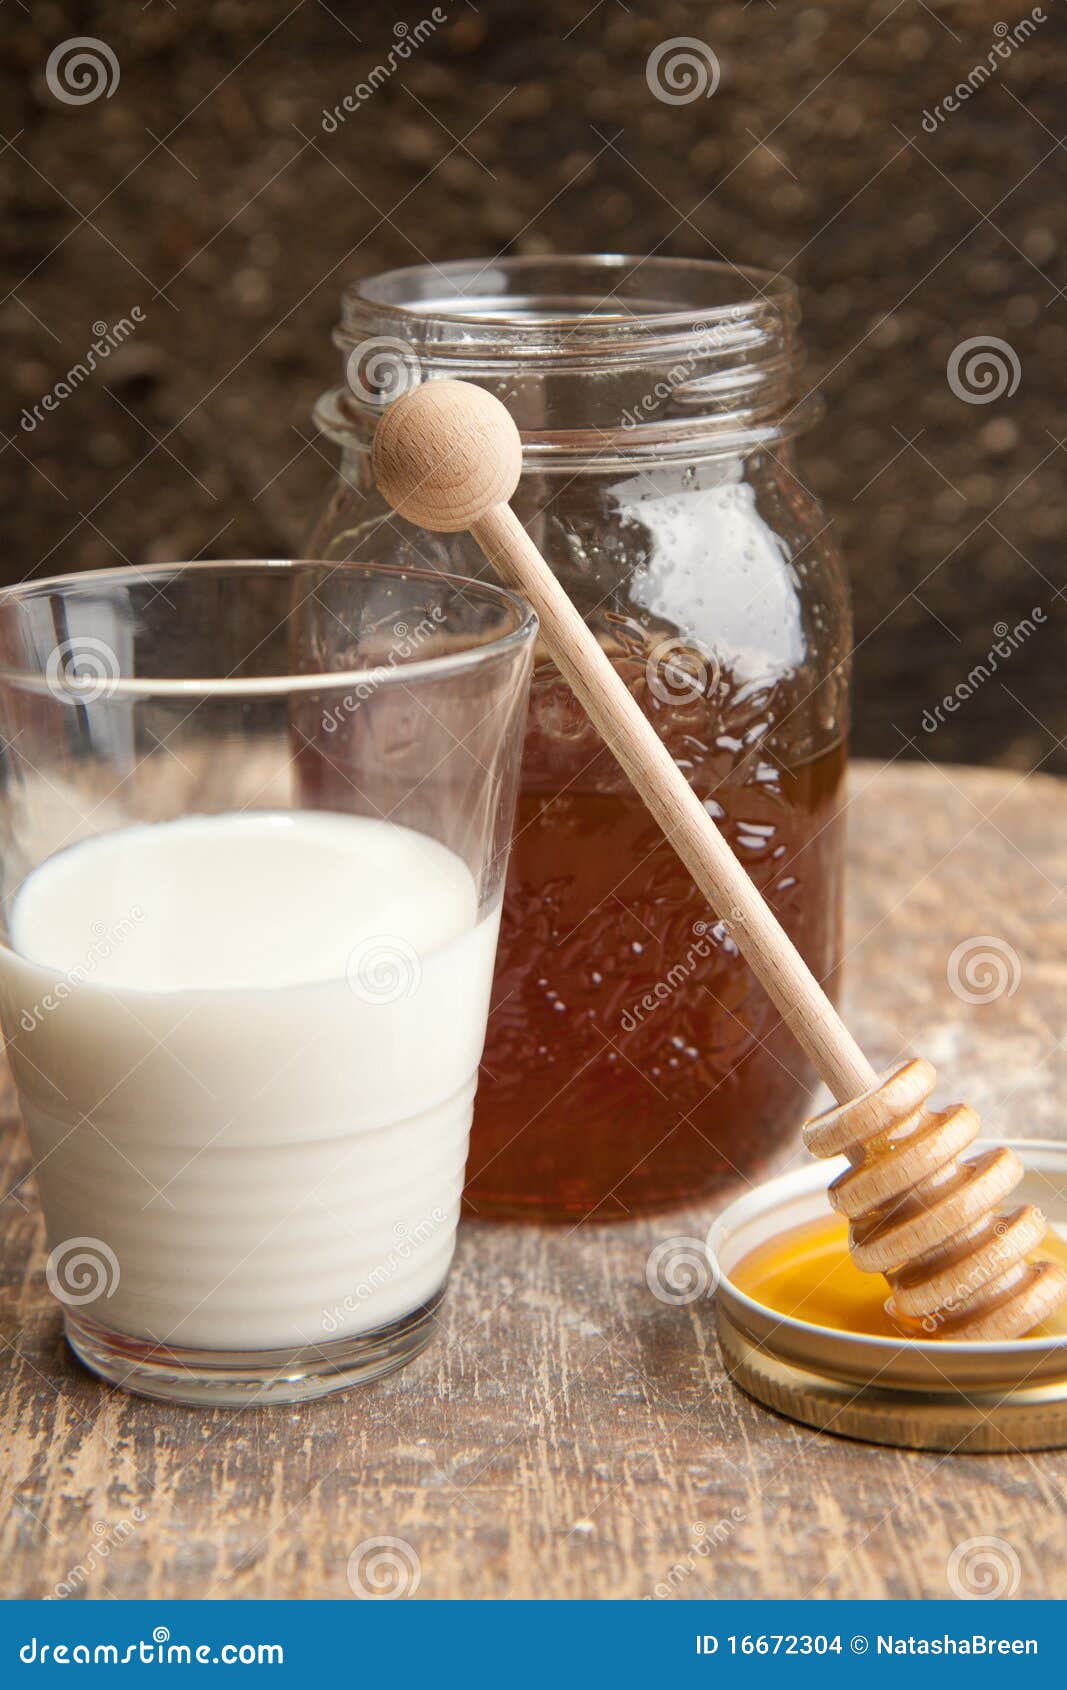 При кашле пить молоко с медом. Молоко и мед. Молоко с мёдом от кашля. Молоко с прополисом и медом. Народные средства с молоком медом.